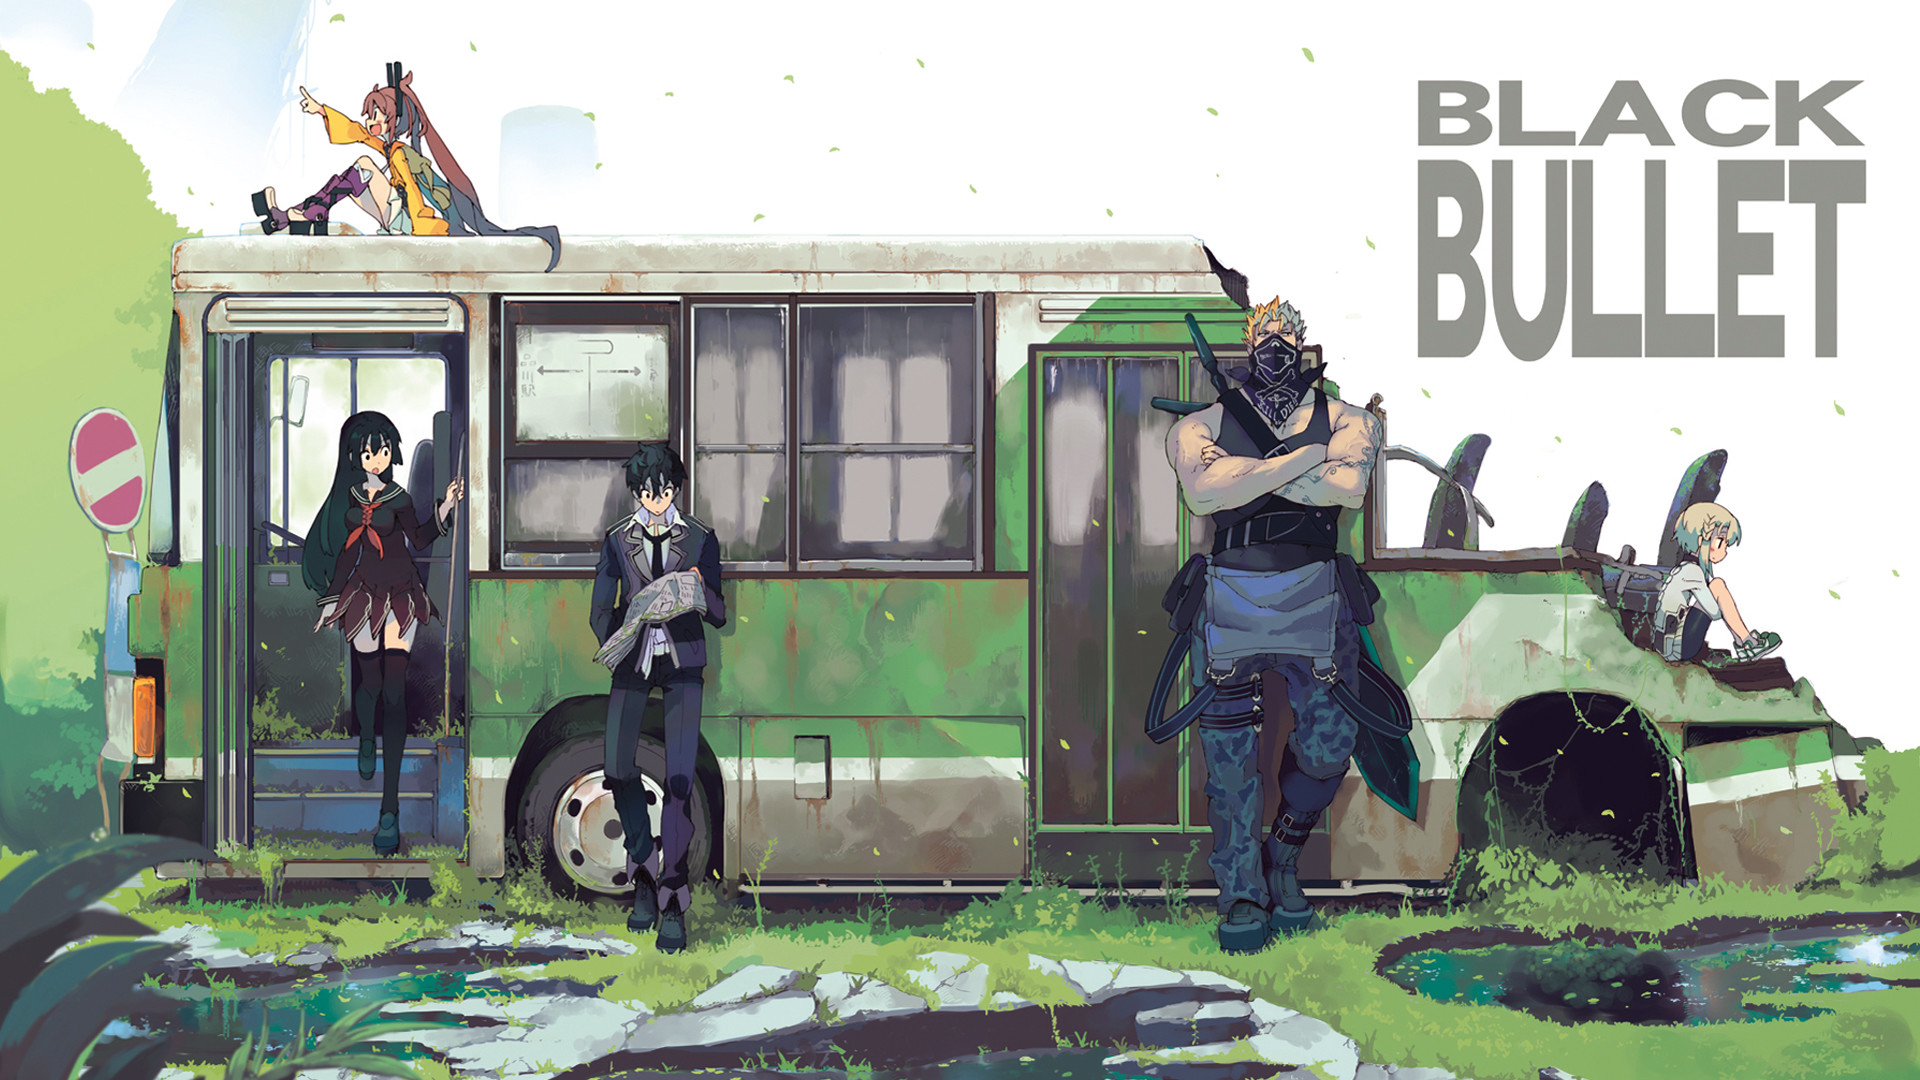 1920x1080 Black Bullet | Pinterest | Black bullet, Anime and Manga